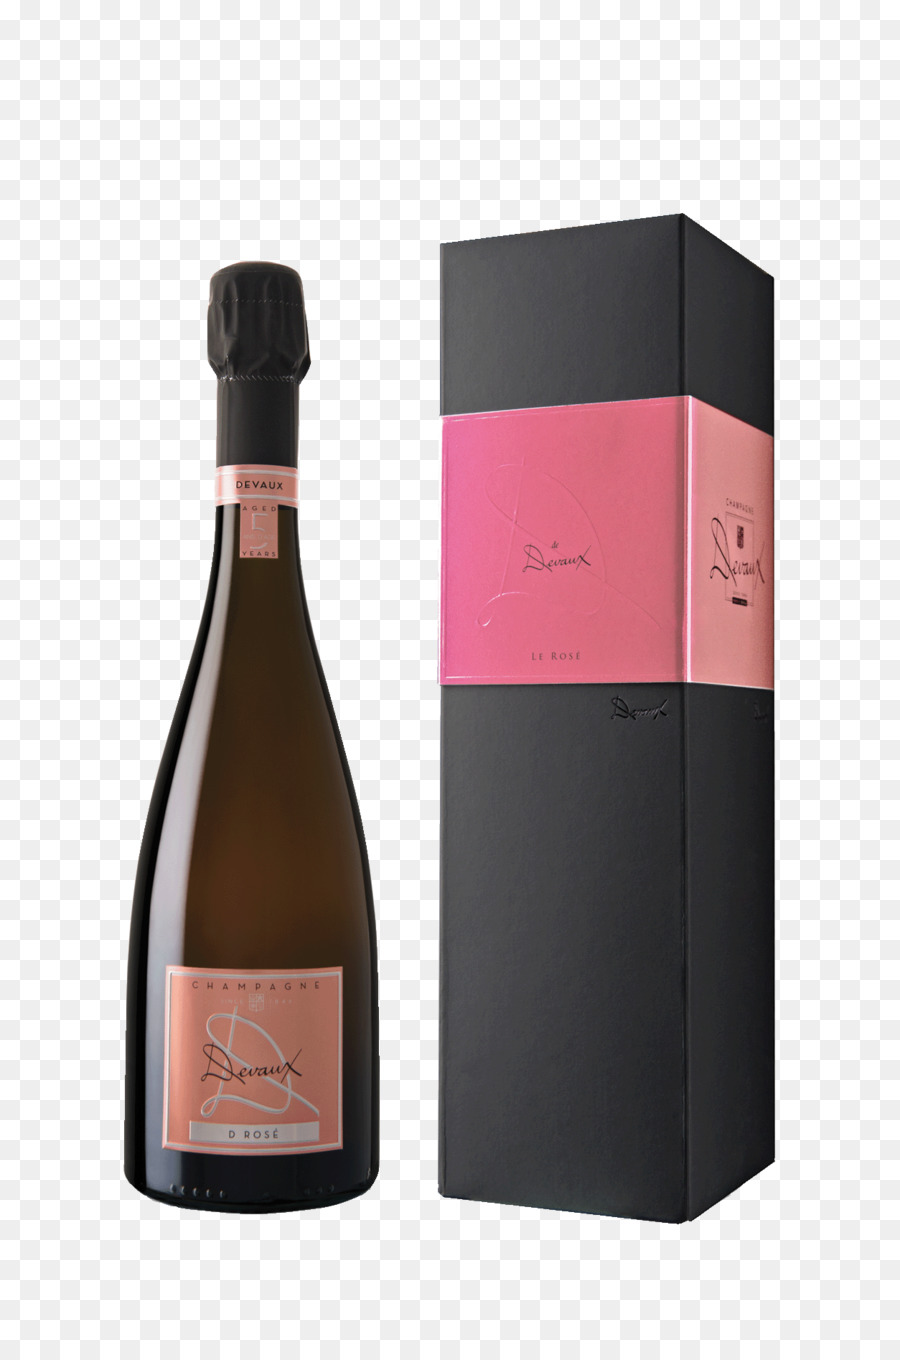 Champagne Rosé Champagne rosé, Vino, Champagne di Pierre Mignon - Champagne